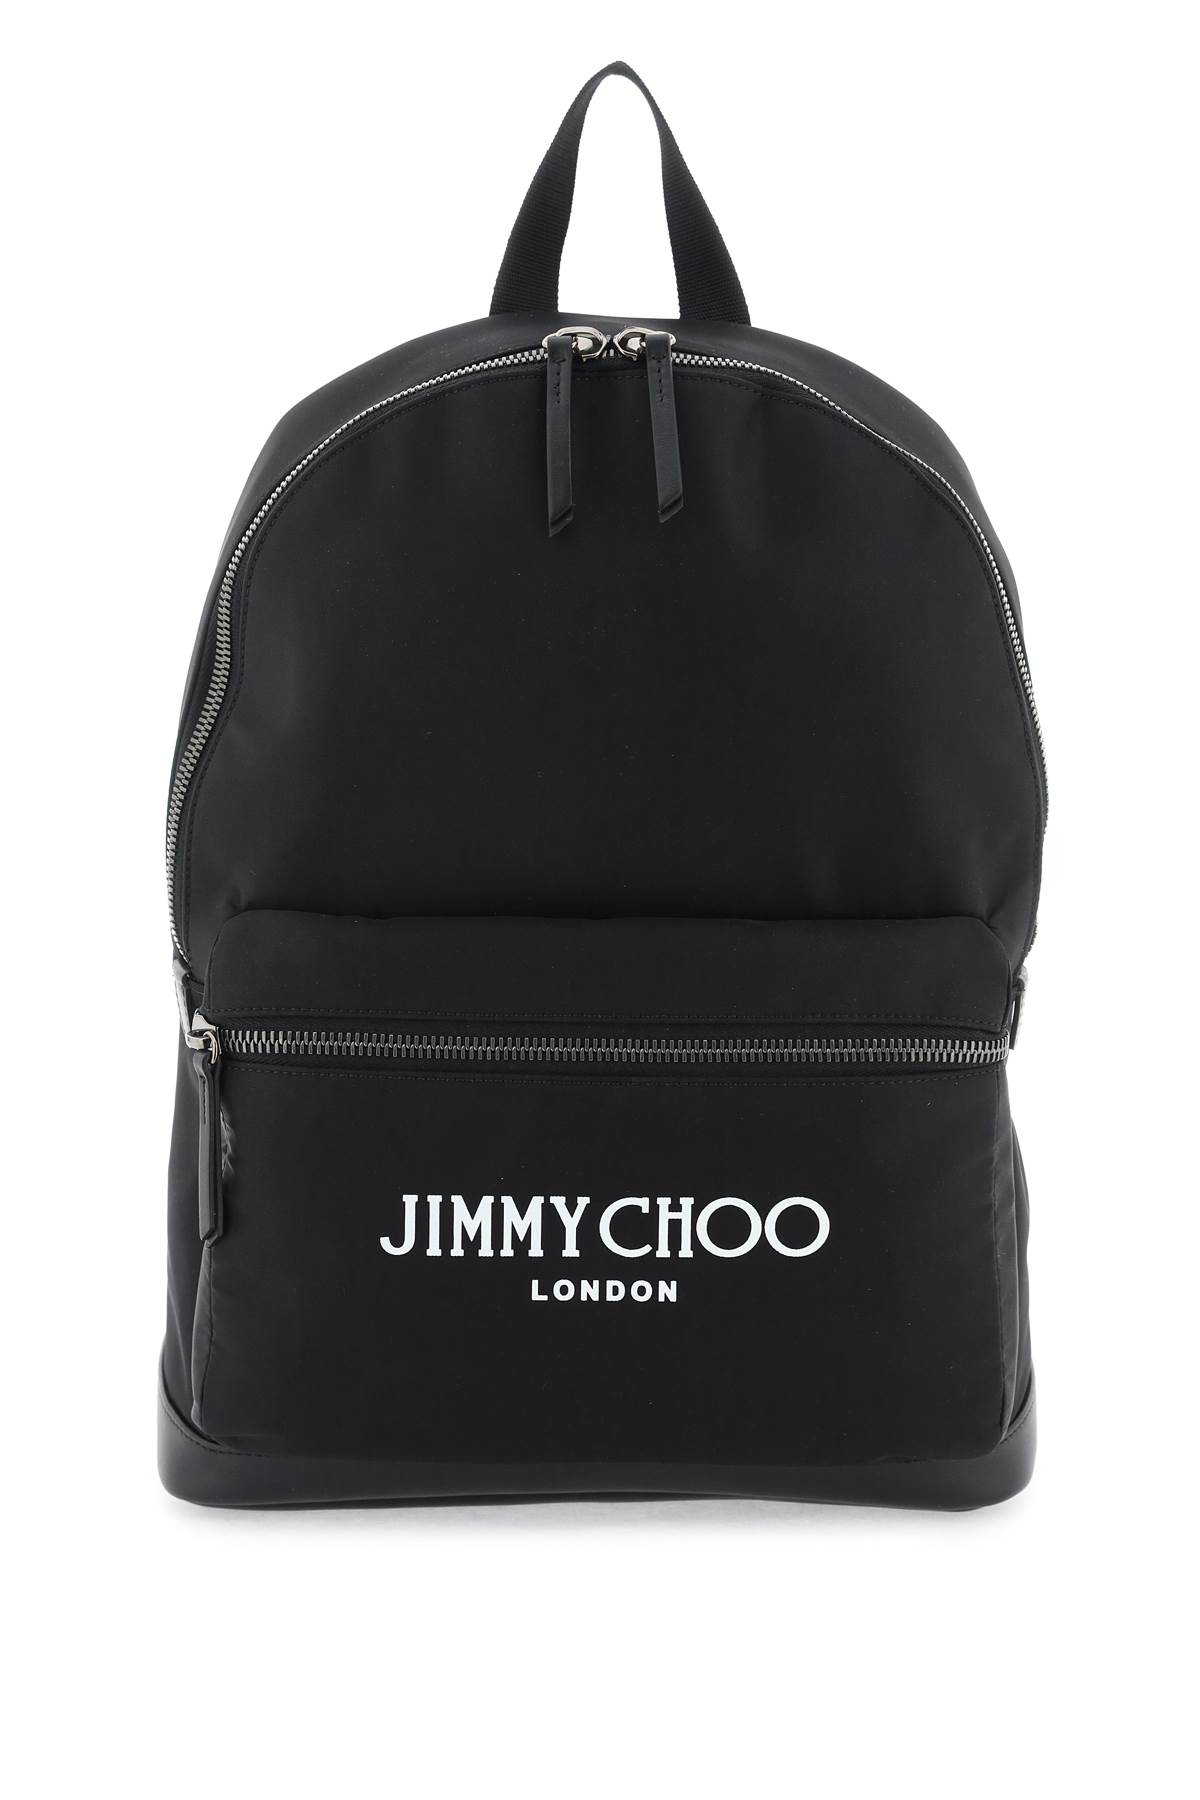 Jimmy Choo Wilmer Backpack In Black Latte Gunmetal (black)